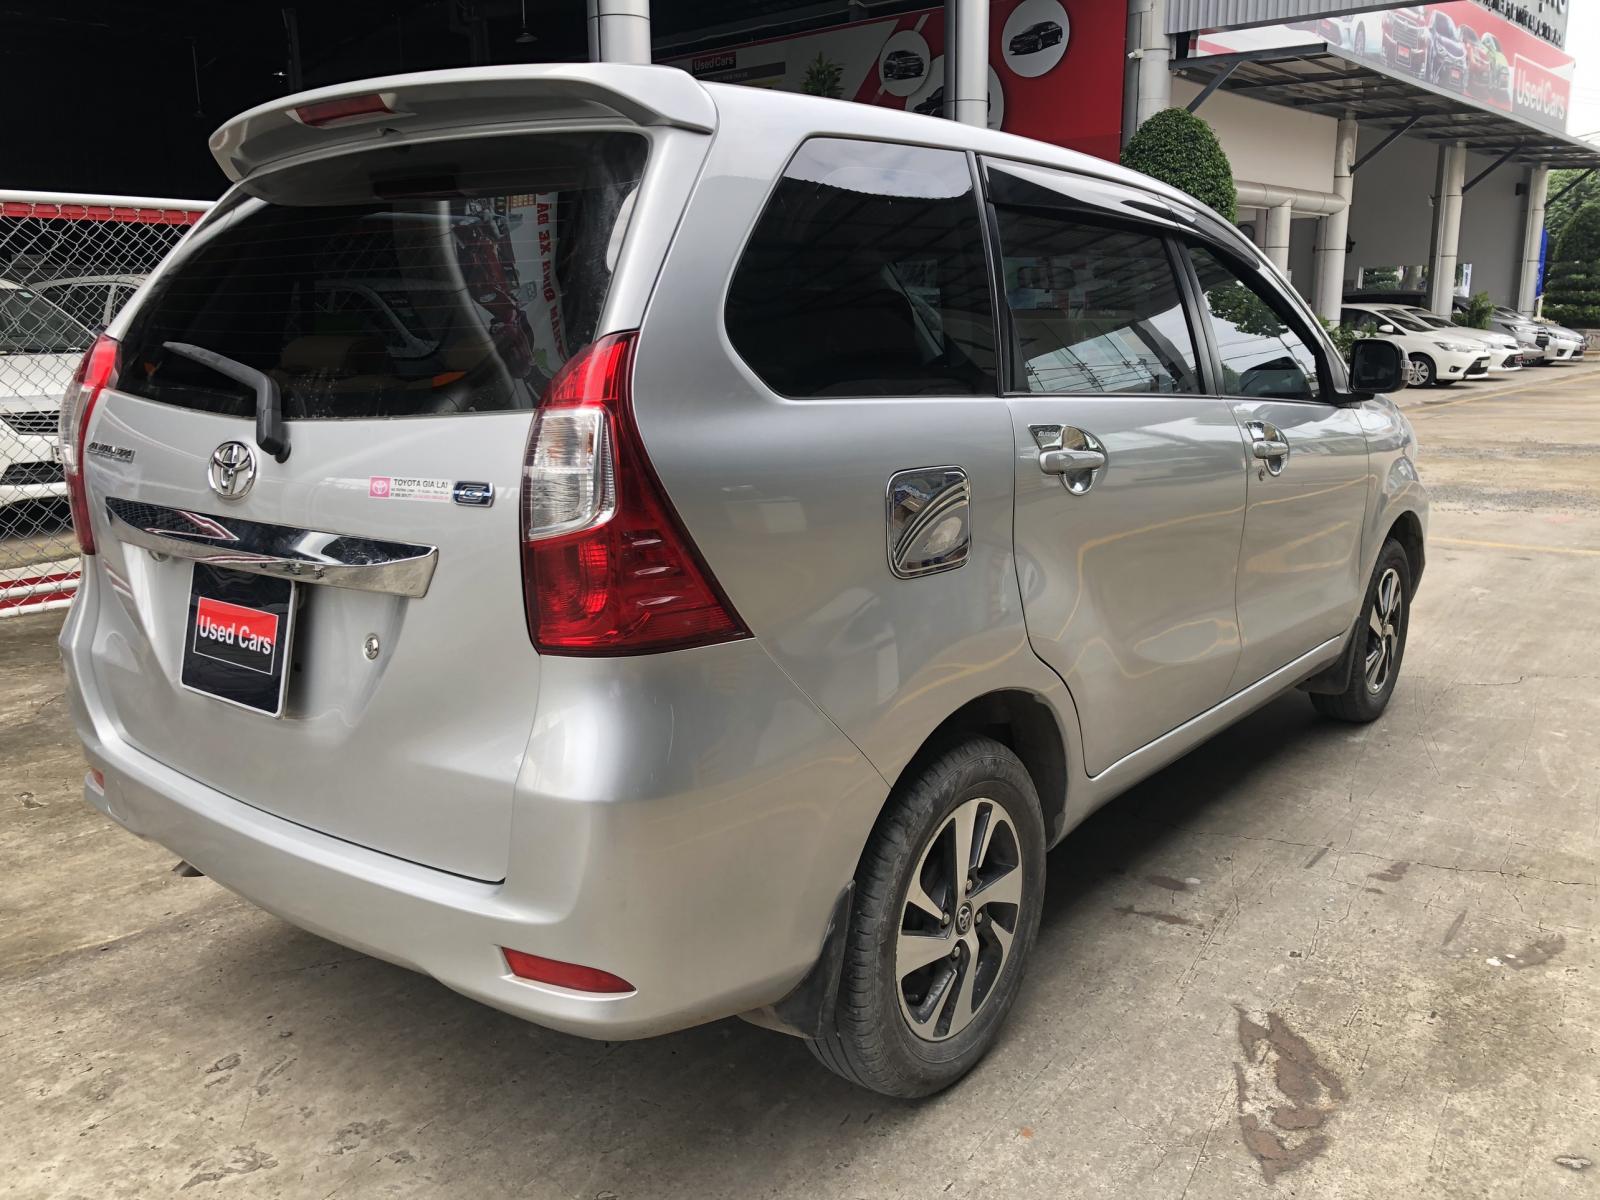 Toyota Toyota khác 2018 - Cần bán xe Toyota Avanza đời 2018, màu bạc, nhập khẩu chính hãng